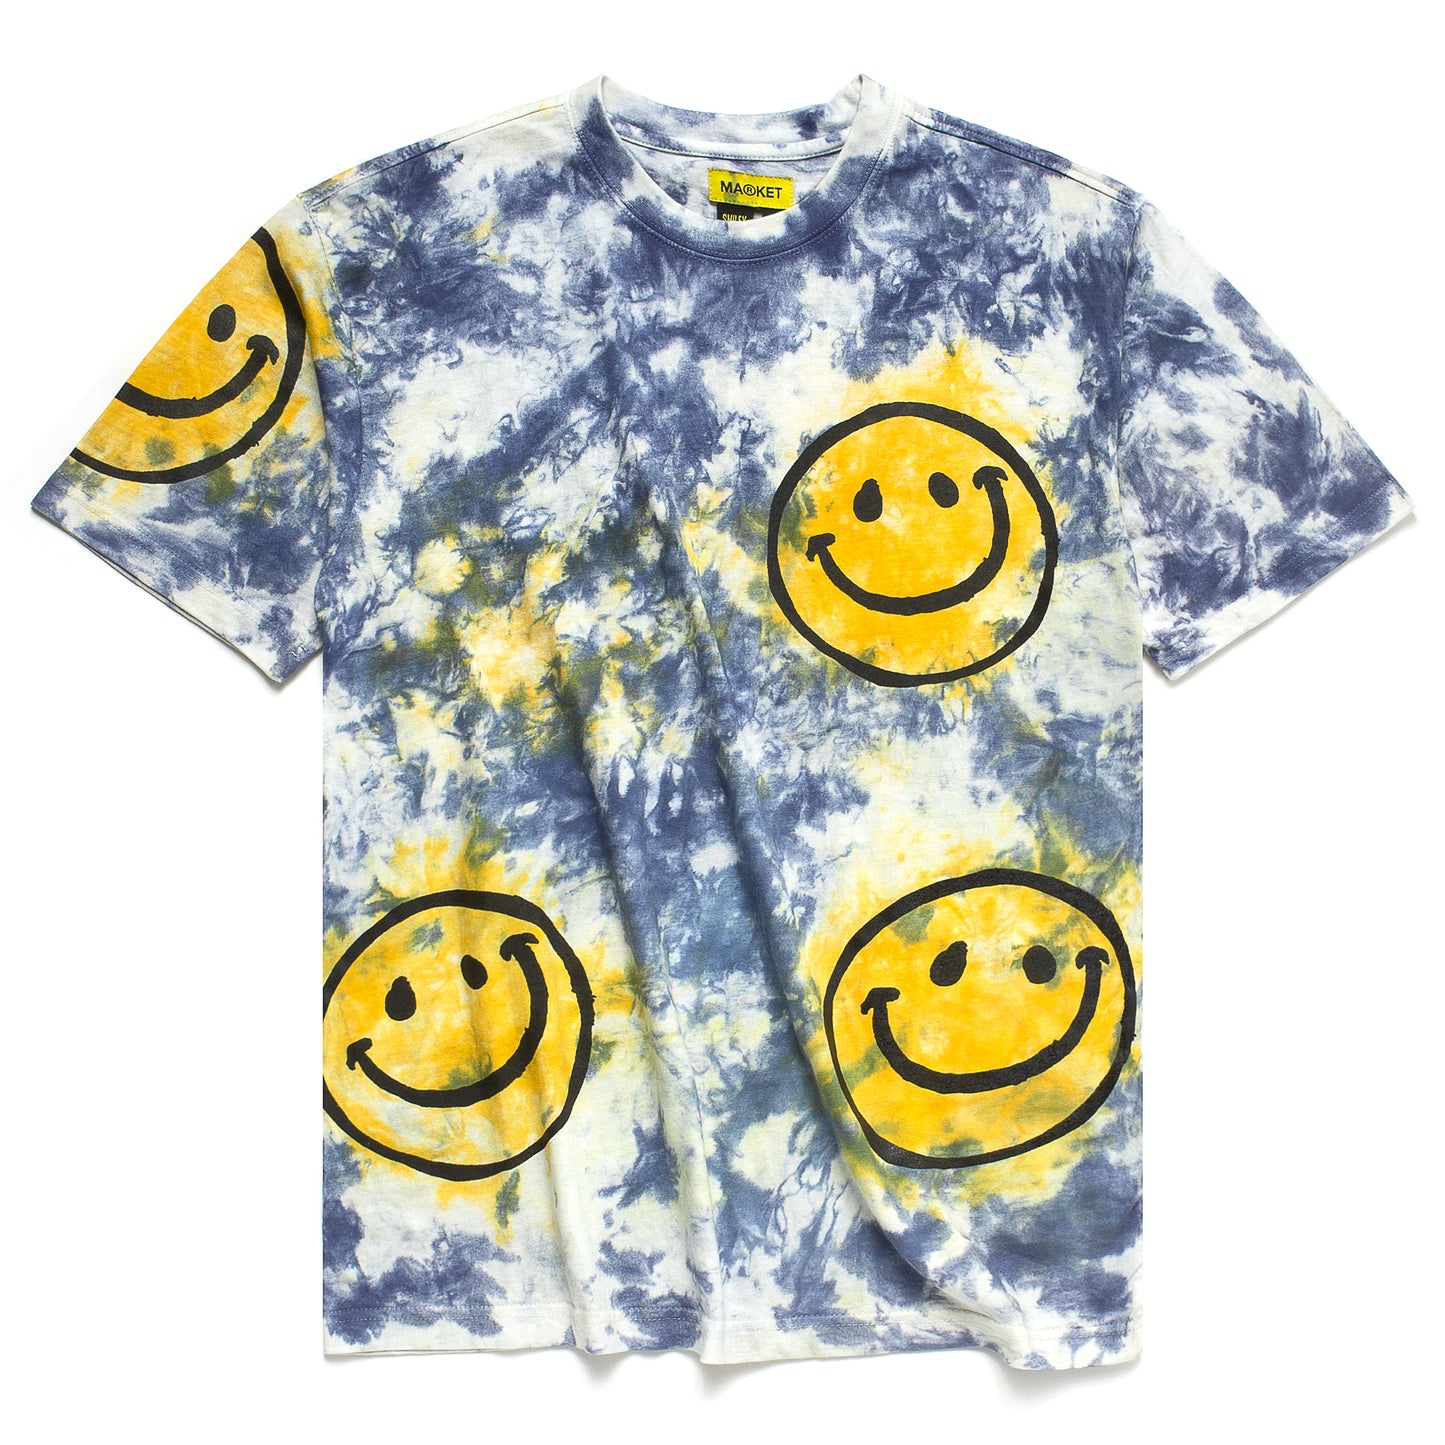 MARKET Smiley Sun Dye T-Shirt